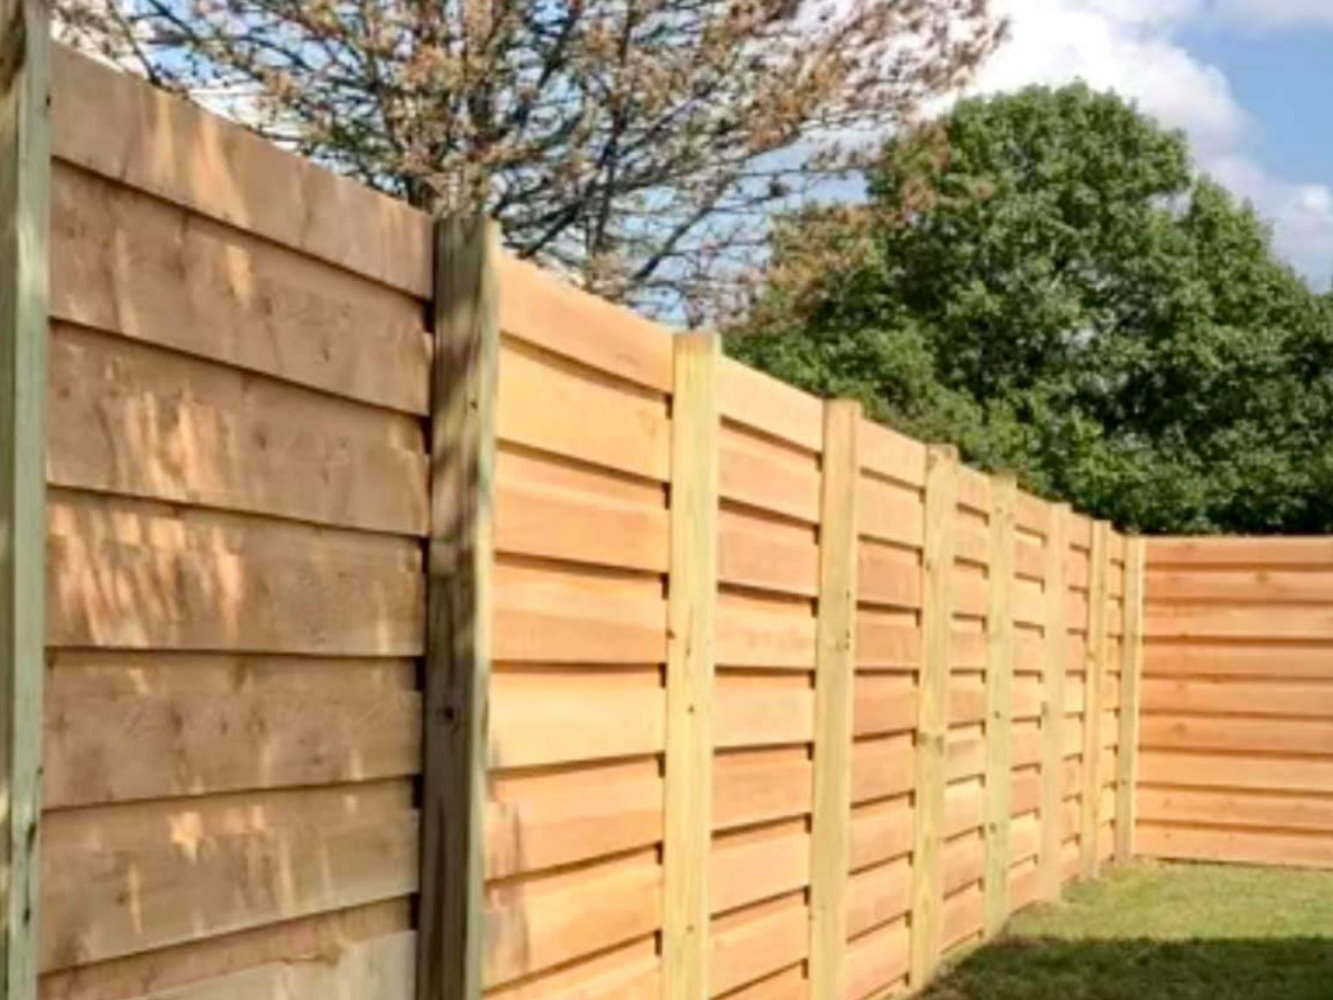 Lewisport KY horizontal style wood fence